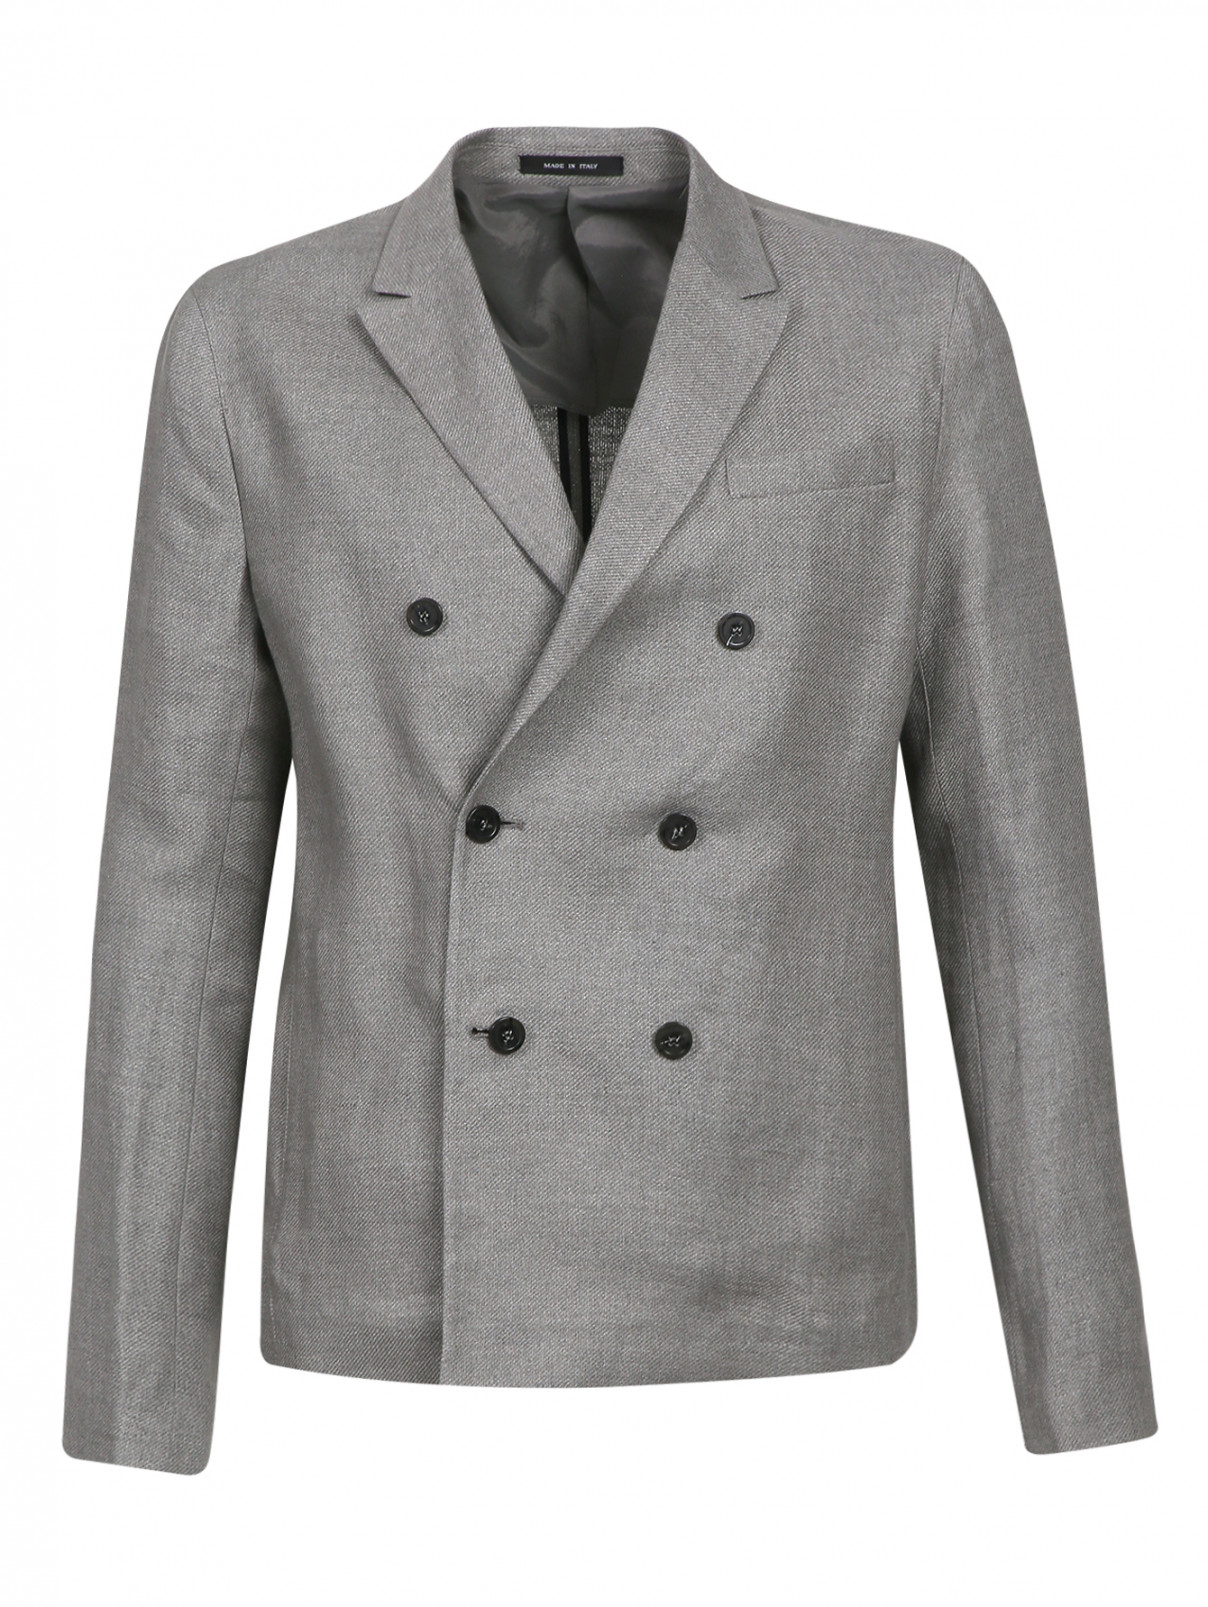 Пиджак двубортный из хлопка Emporio Armani  –  Общий вид  – Цвет:  Серый